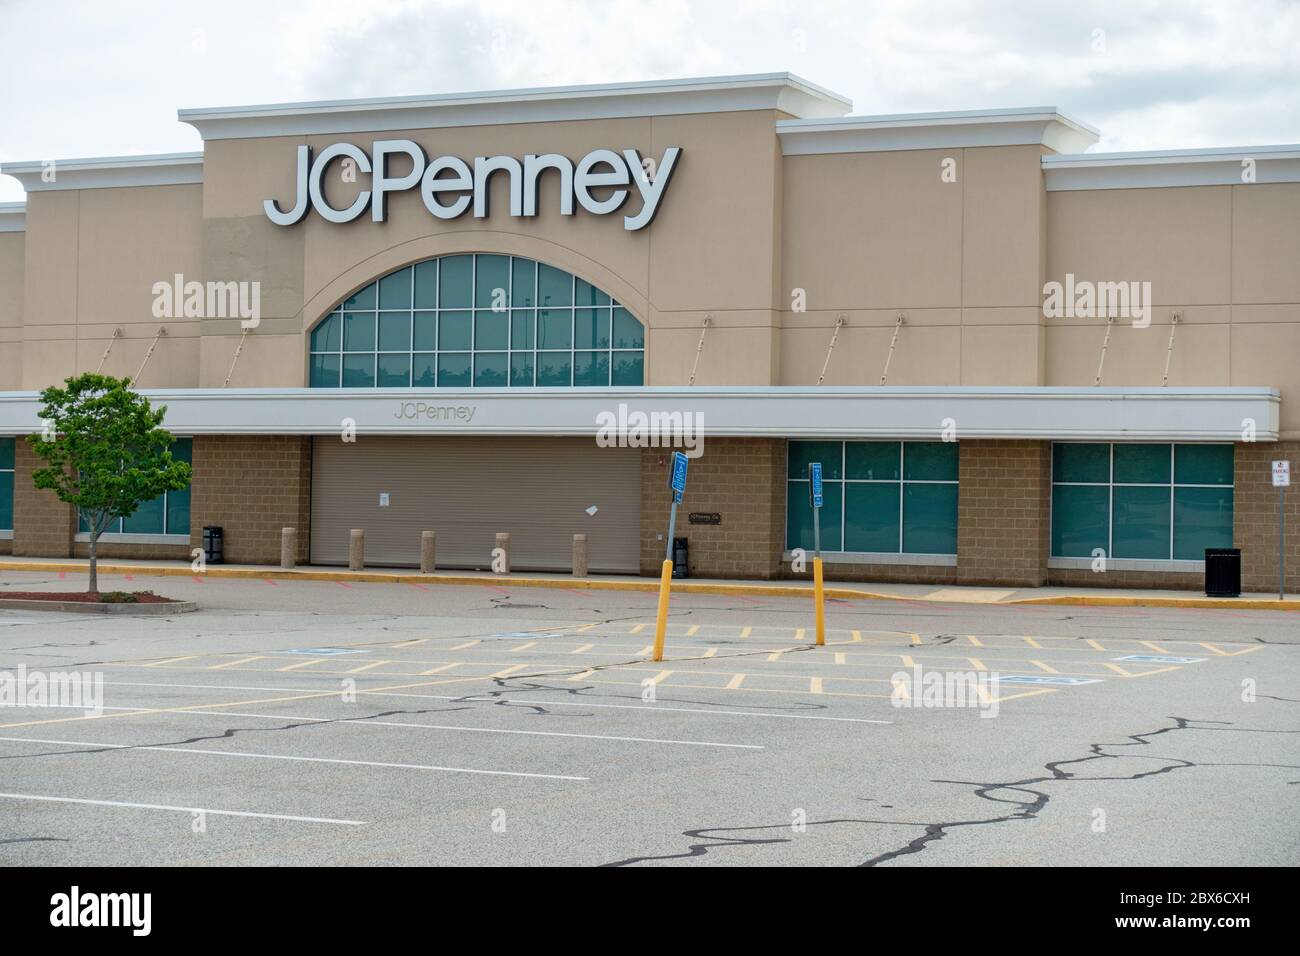 Ein Shuttered J C Penney, Kaufhauskette, außen in Wareham, Massachusetts USA geschlossen während der Covid-19 Pandemie erforderlich Einzelhandelsschließungen Stockfoto